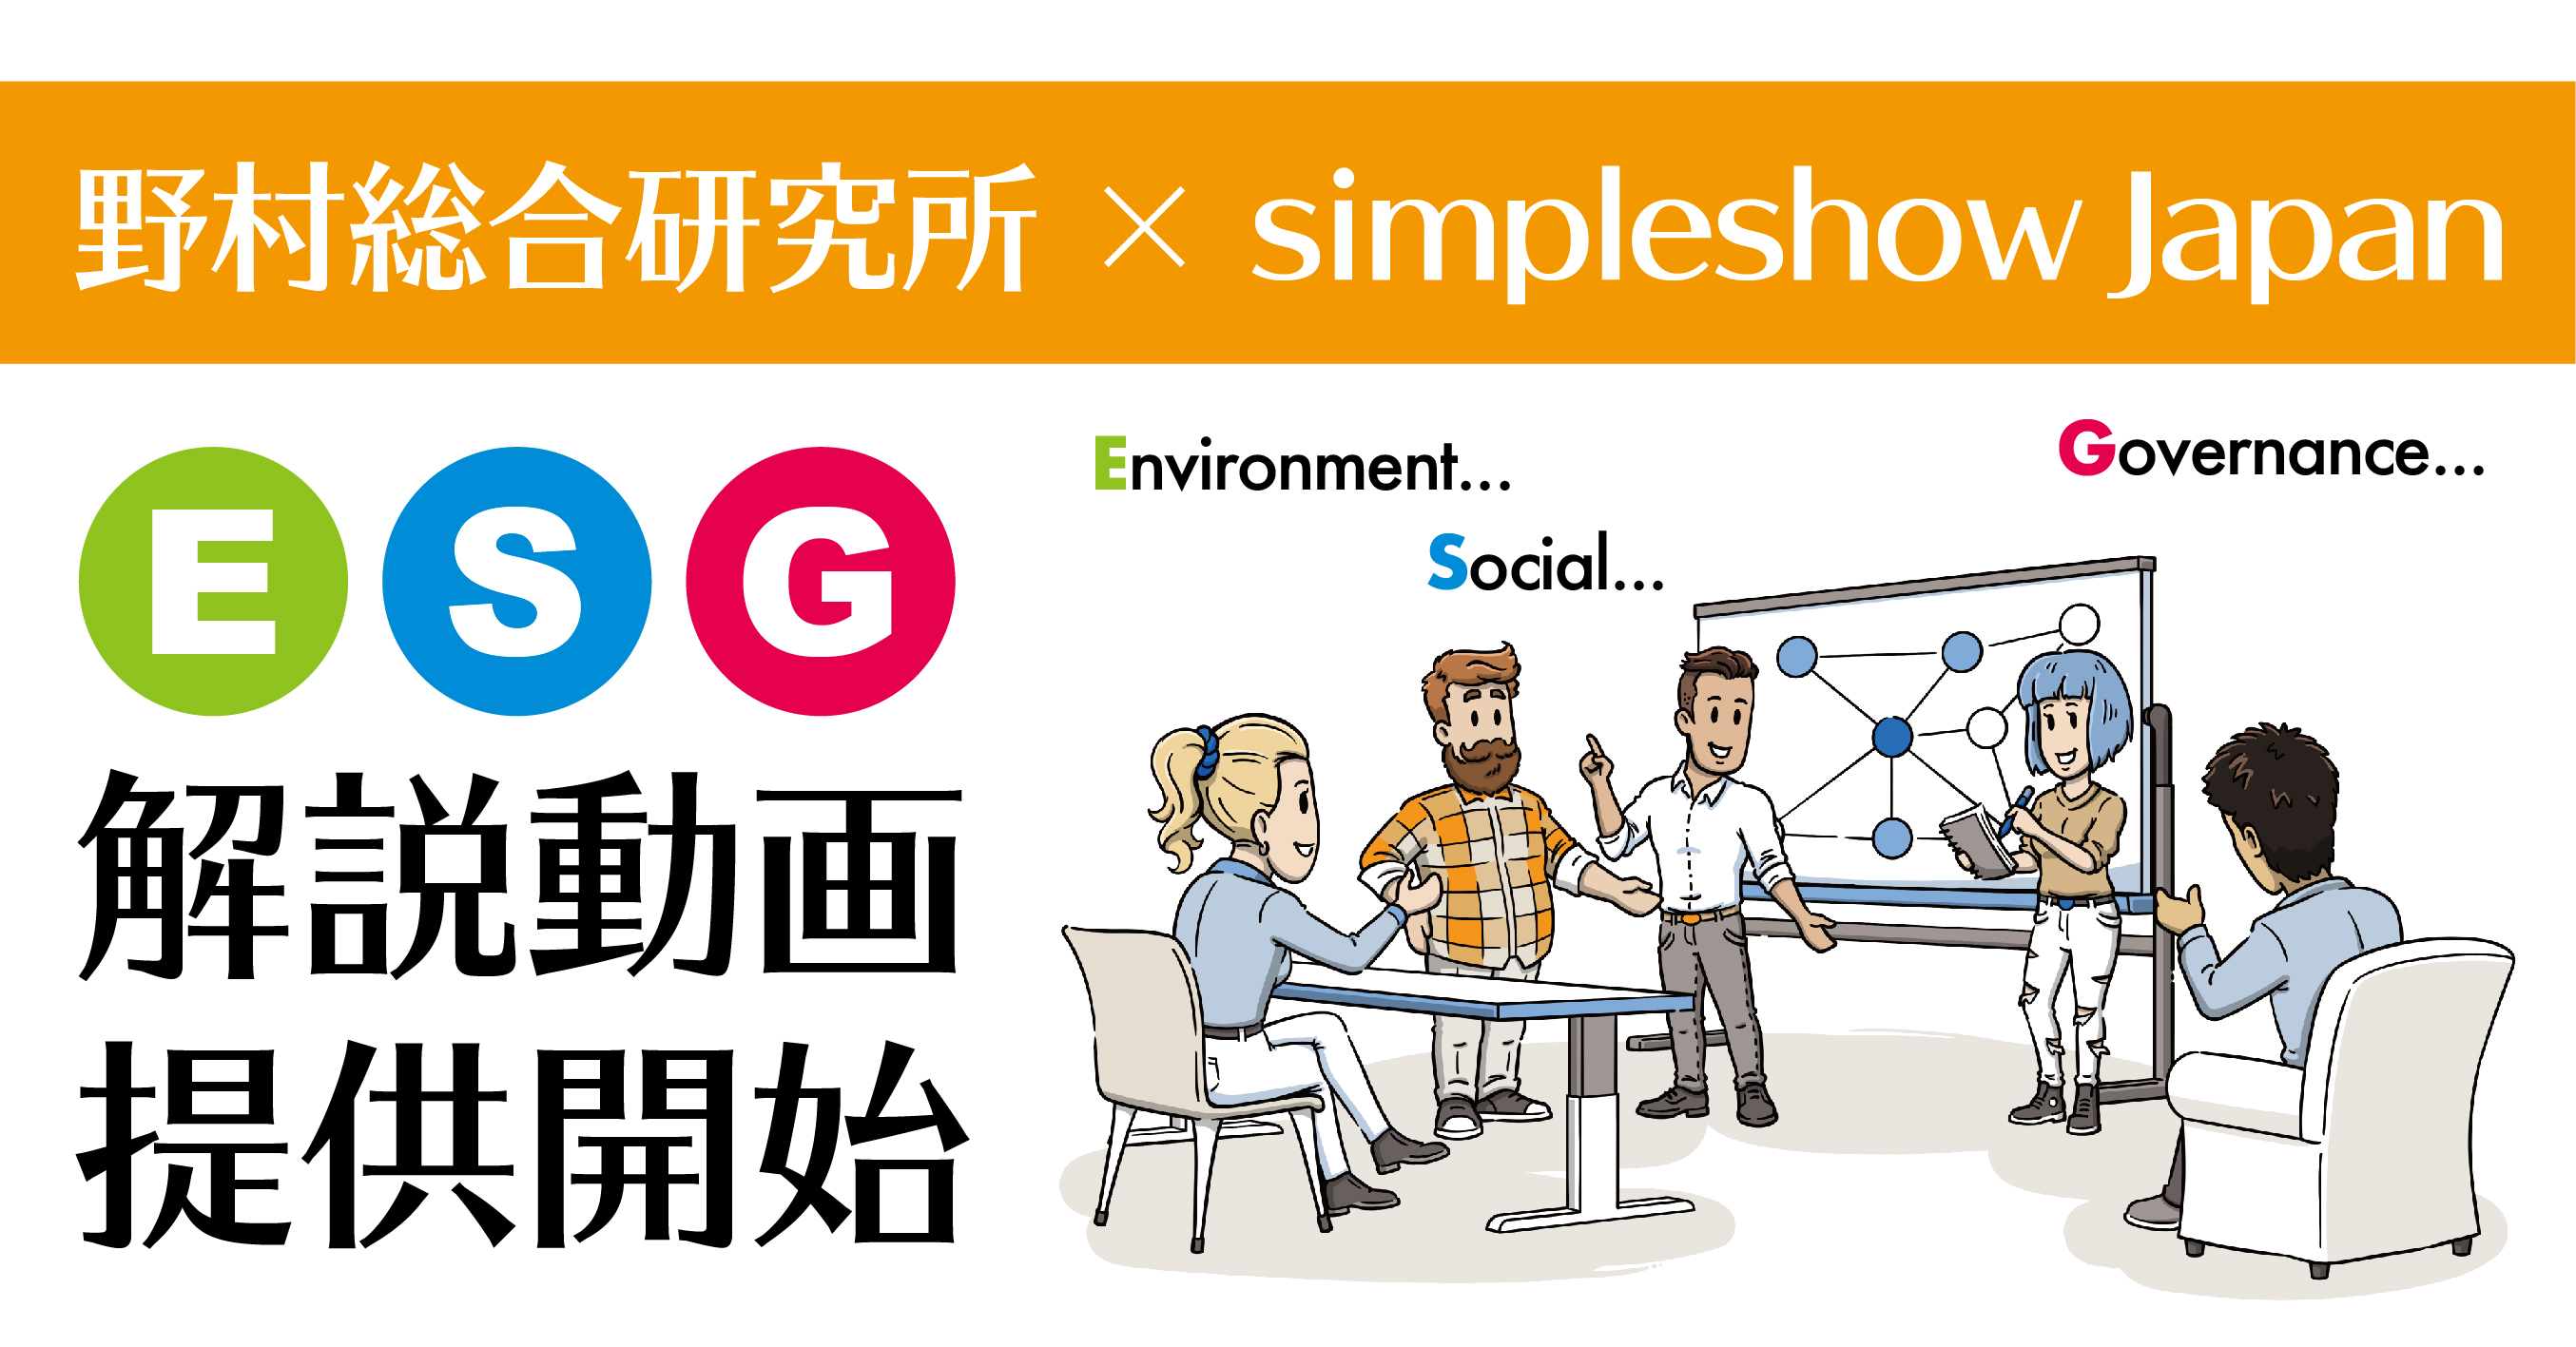 野村総合研究所 Simpleshow Japan Esg解説動画の提供開始 株式会社simpleshow Japanのプレスリリース